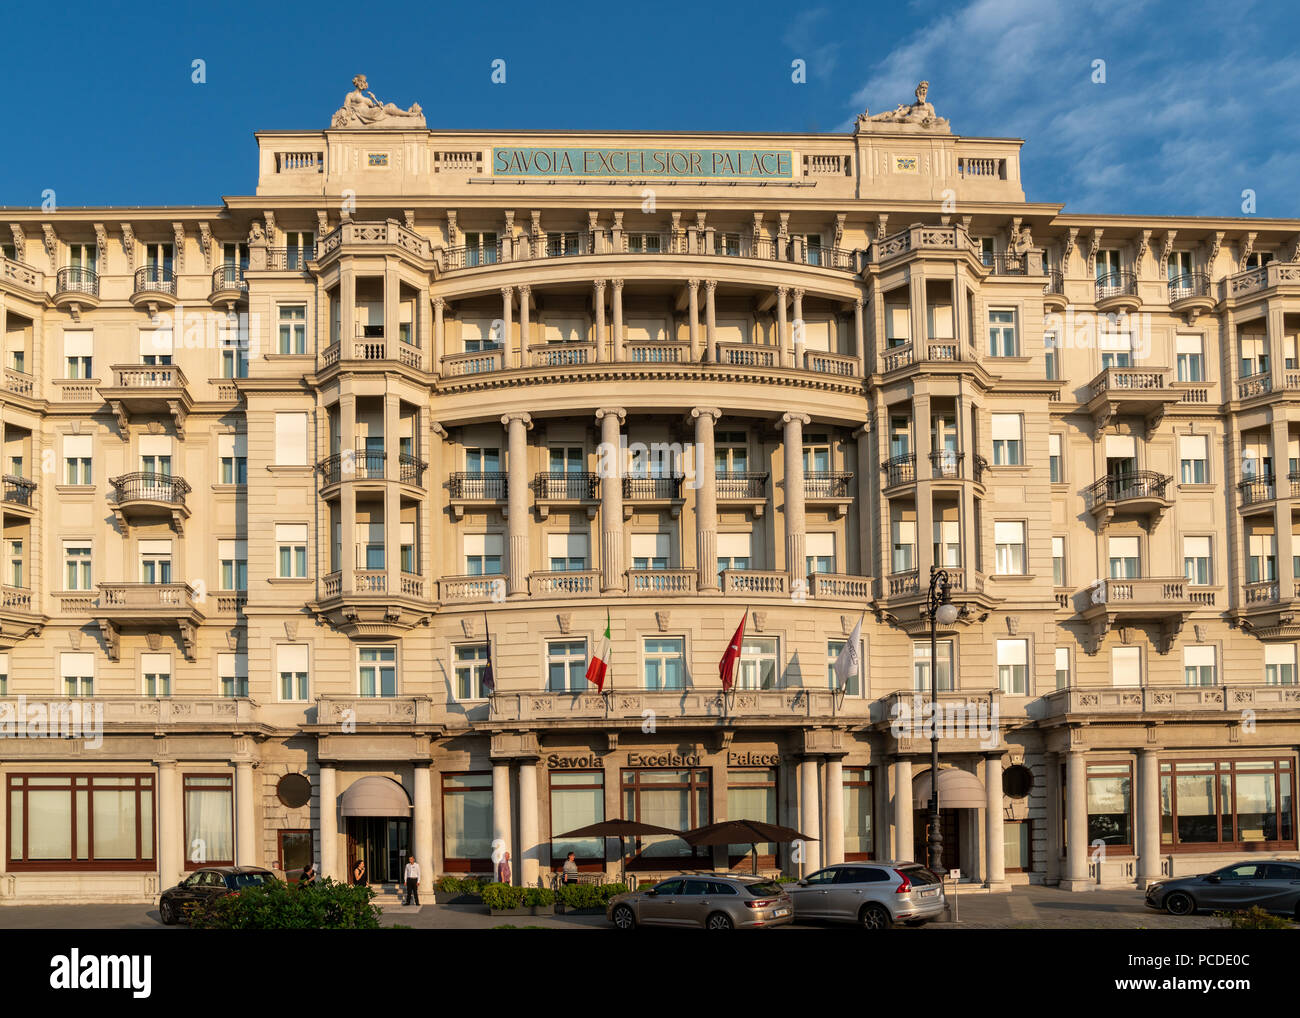 Trieste, 31 luglio 2018. L'iconico Savoia Excelsior Palace hotel nel centro cittadino di Trieste, Italia. Foto di Enrique Shore Foto Stock